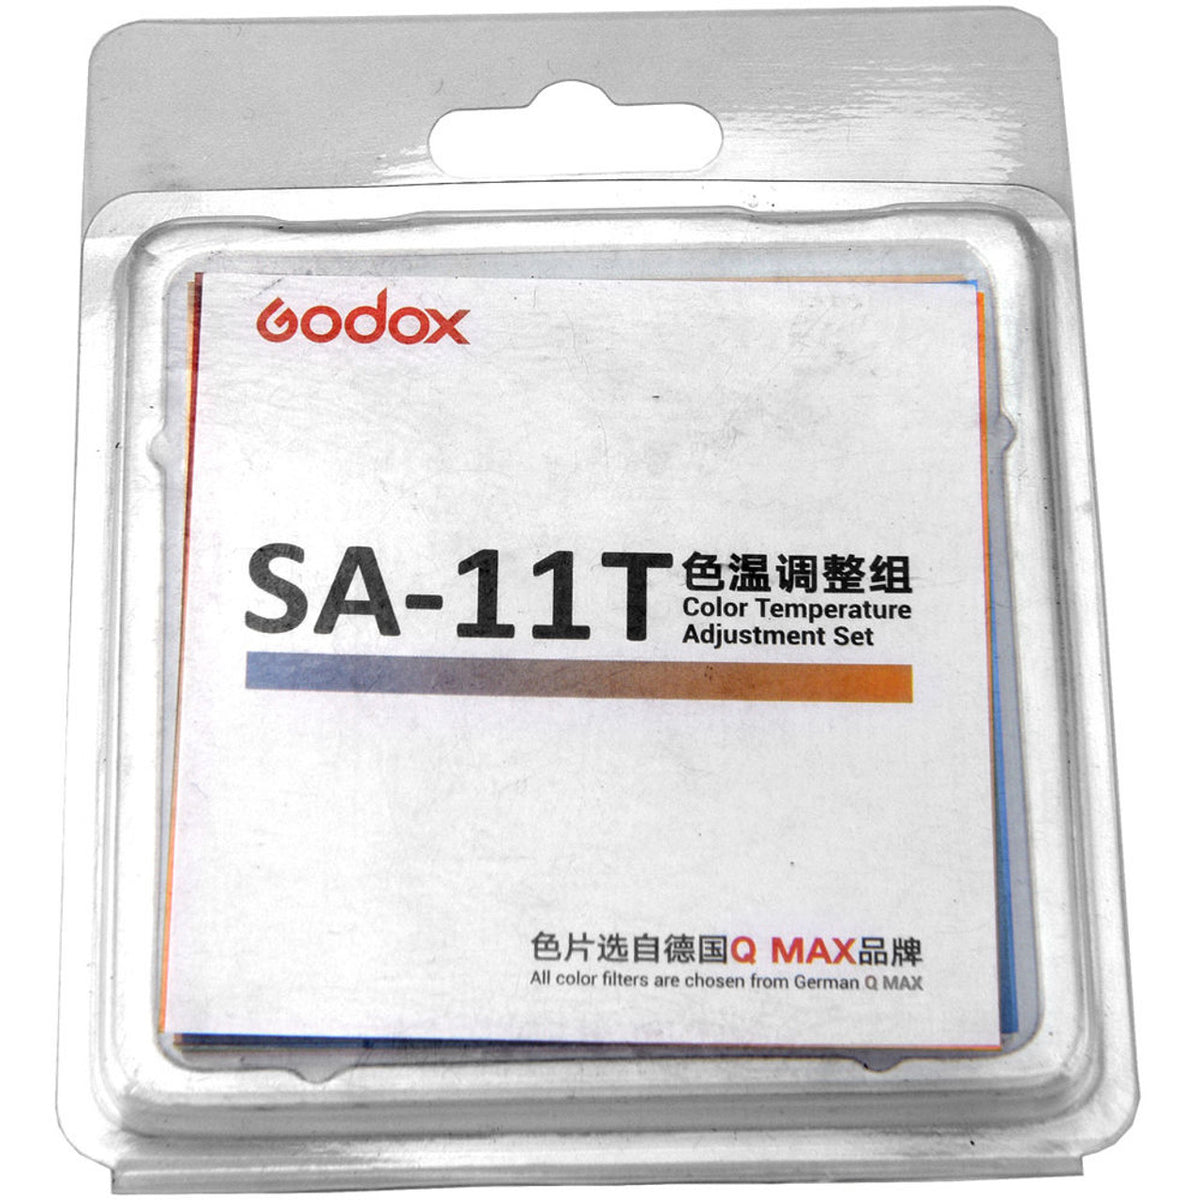 Godox 神牛 SA-11T Color Temperature Adjustment Set ( S30 適用 )